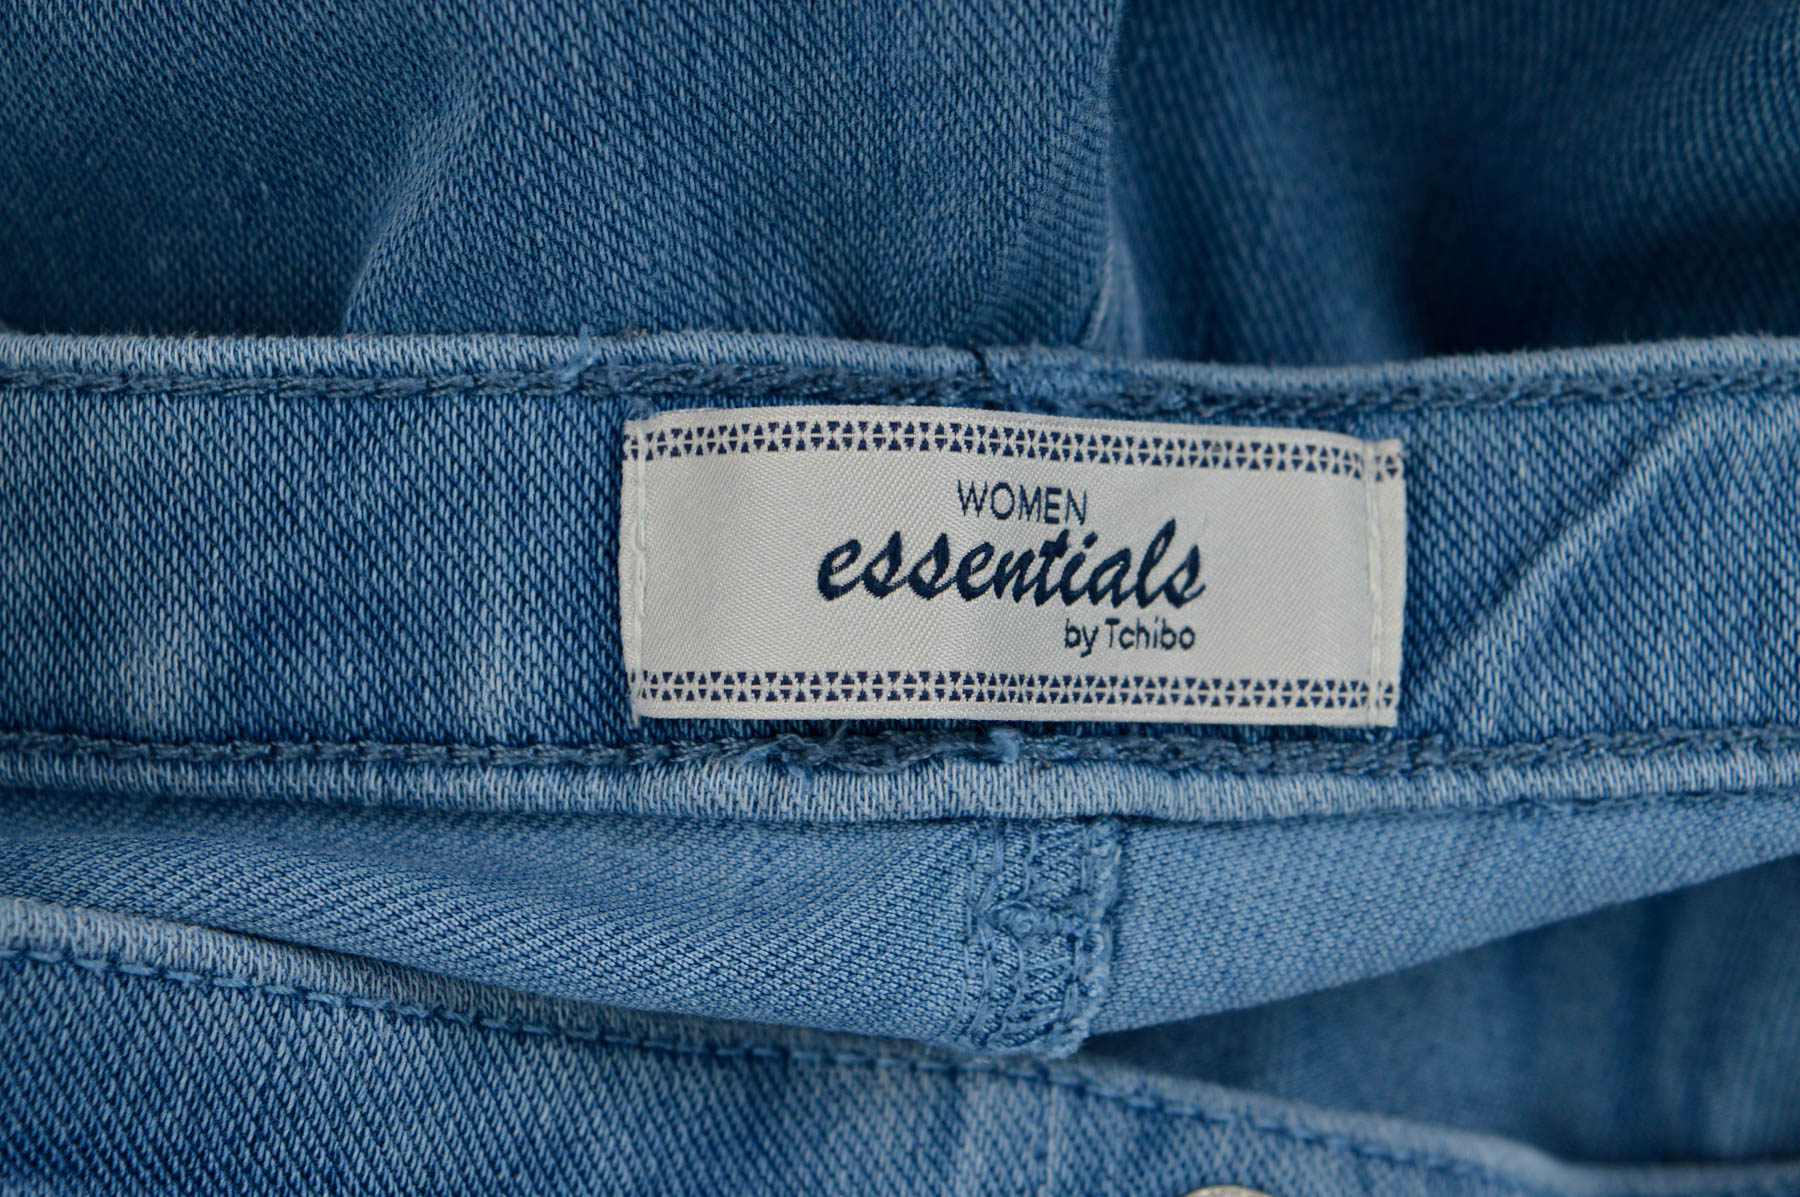 Women's jeans - WOMEN essentials by Tchibo - 2